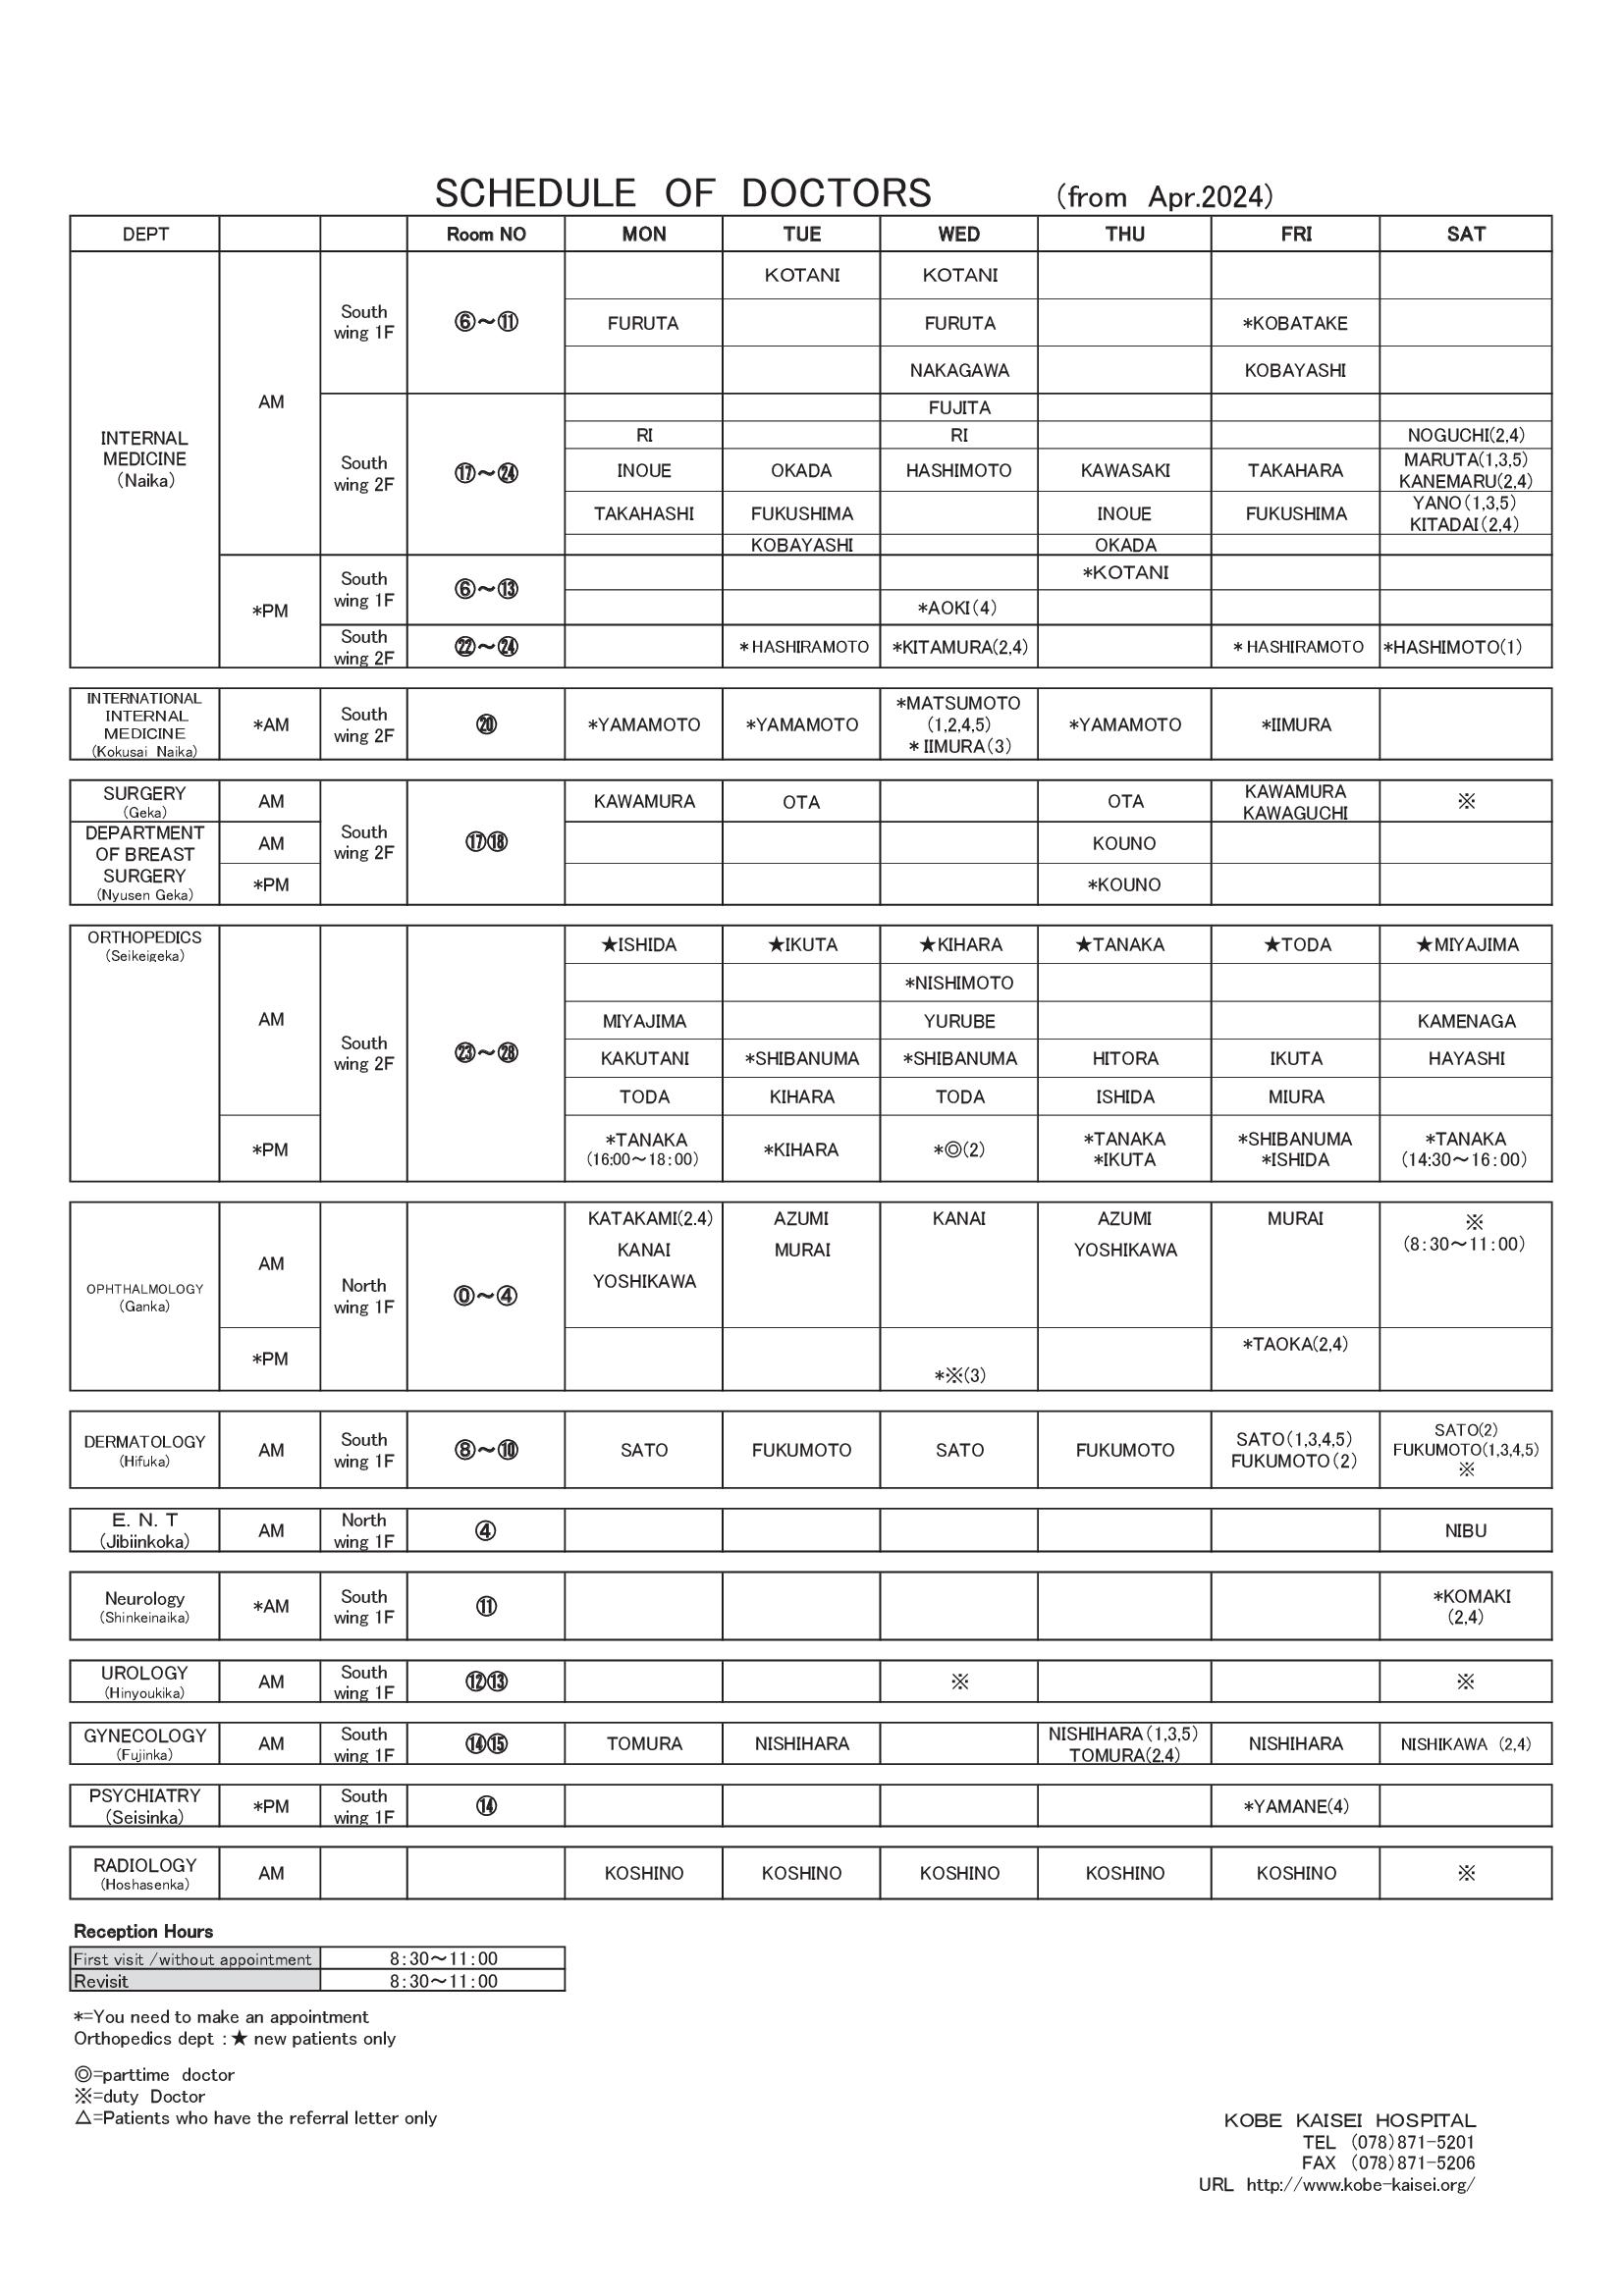 Schedule of Doctors